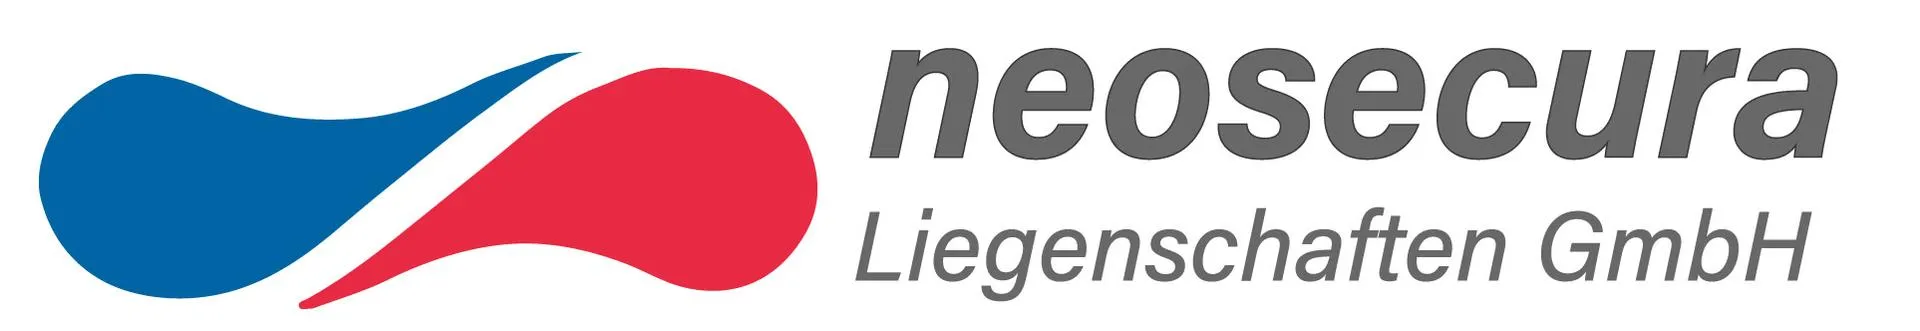 Makler neosecura Liegenschaften GmbH logo